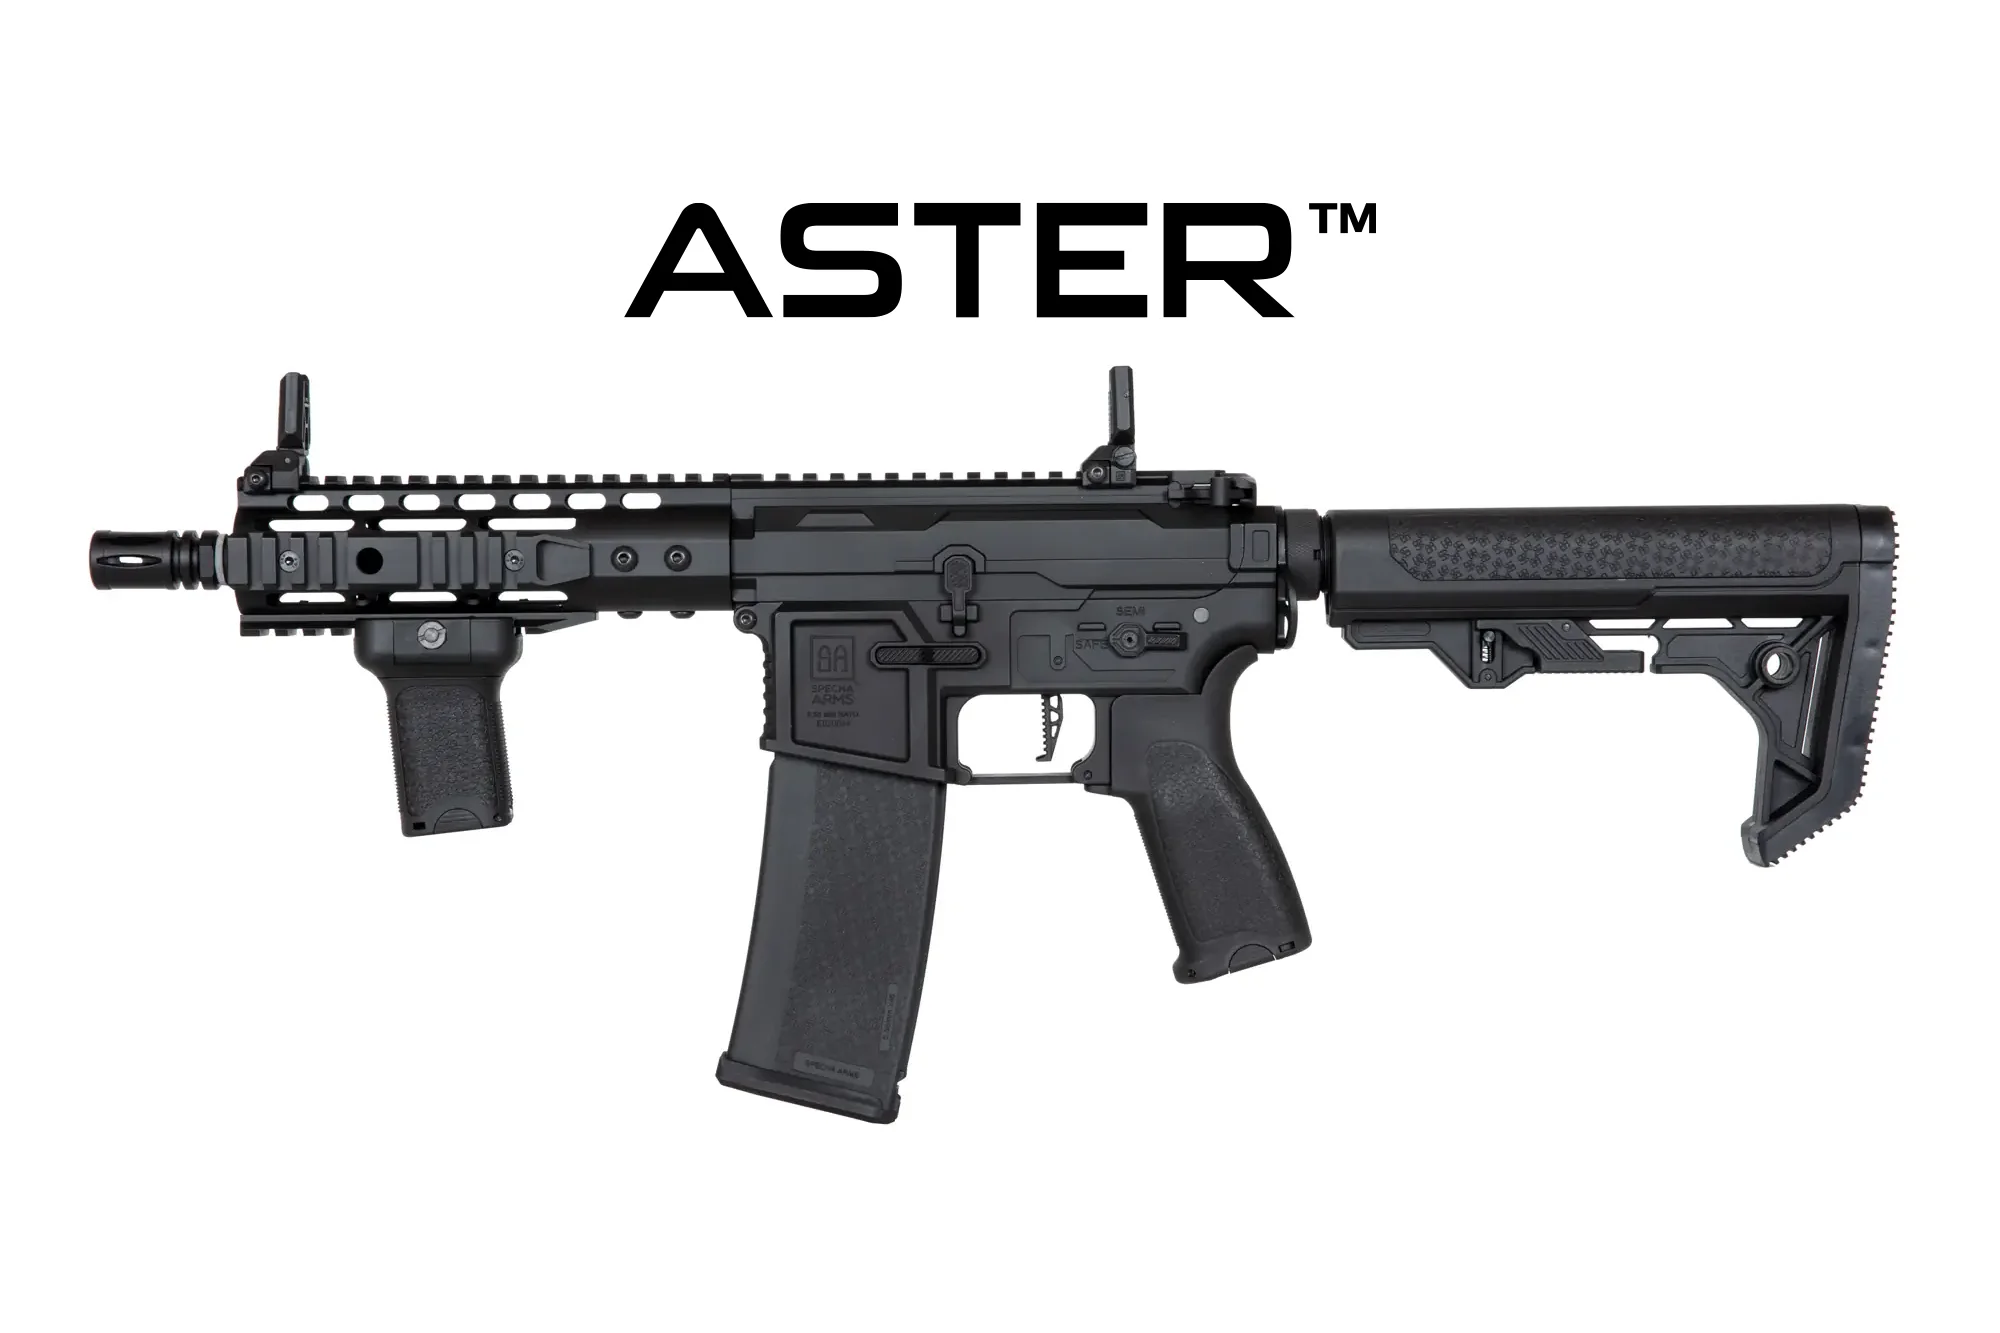 SA-E12 EDGE 2.0™ GATE ASTER carbine replica black - New receiver/Light Ops Stock